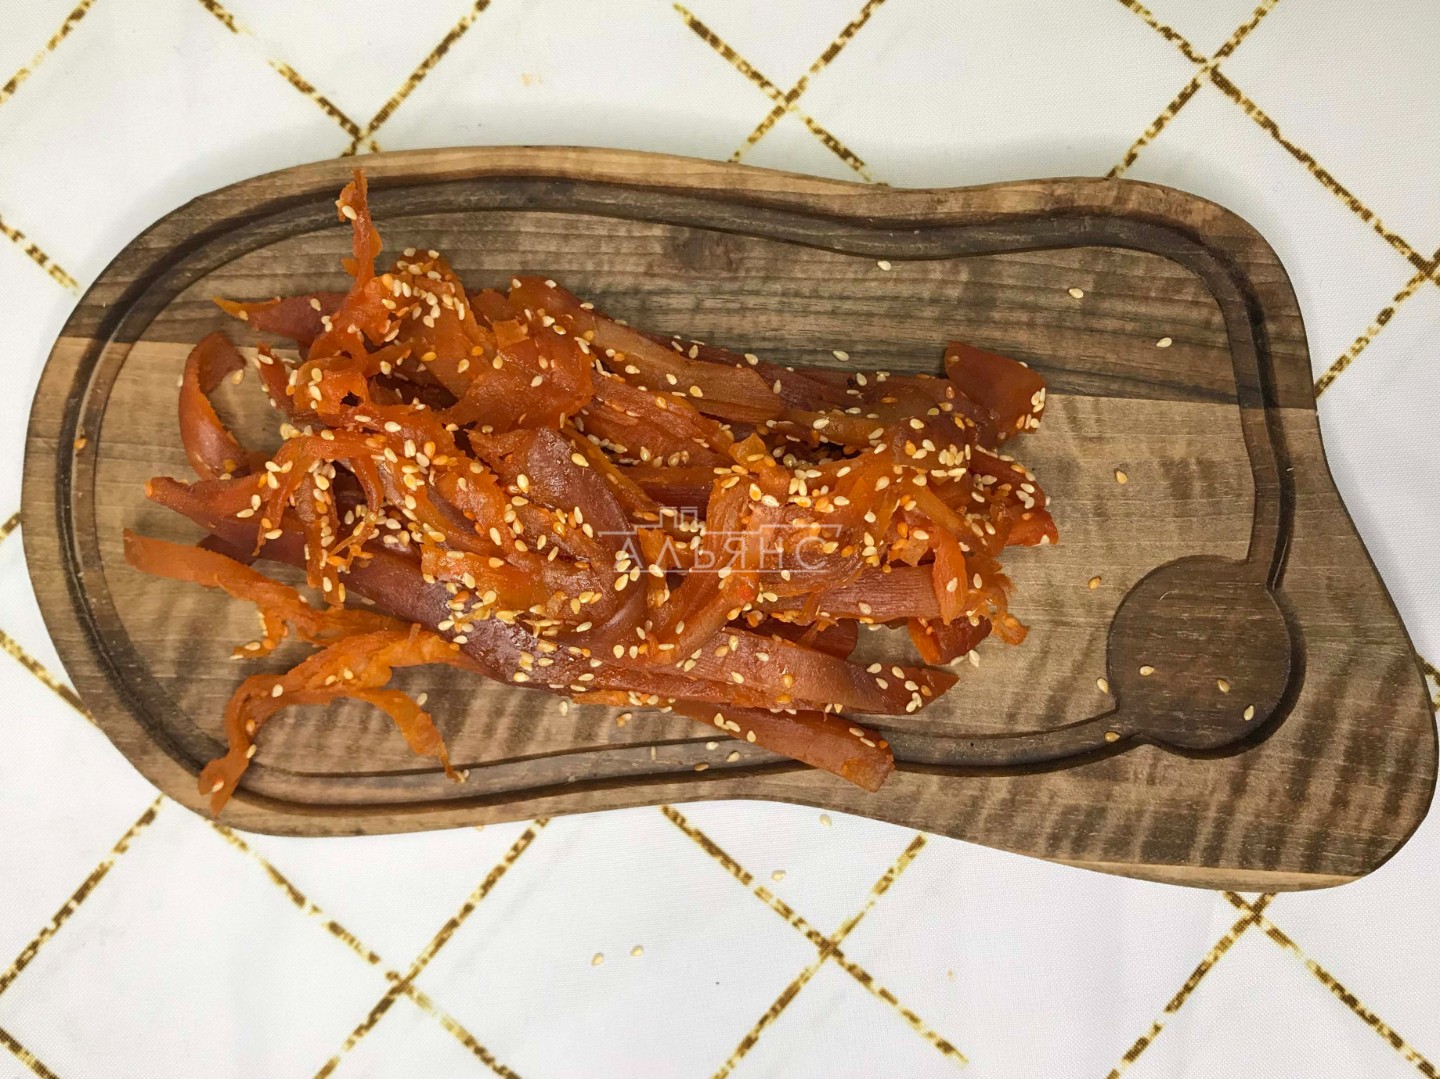 Кальмар со вкусом краба по-шанхайски в Лыткарино